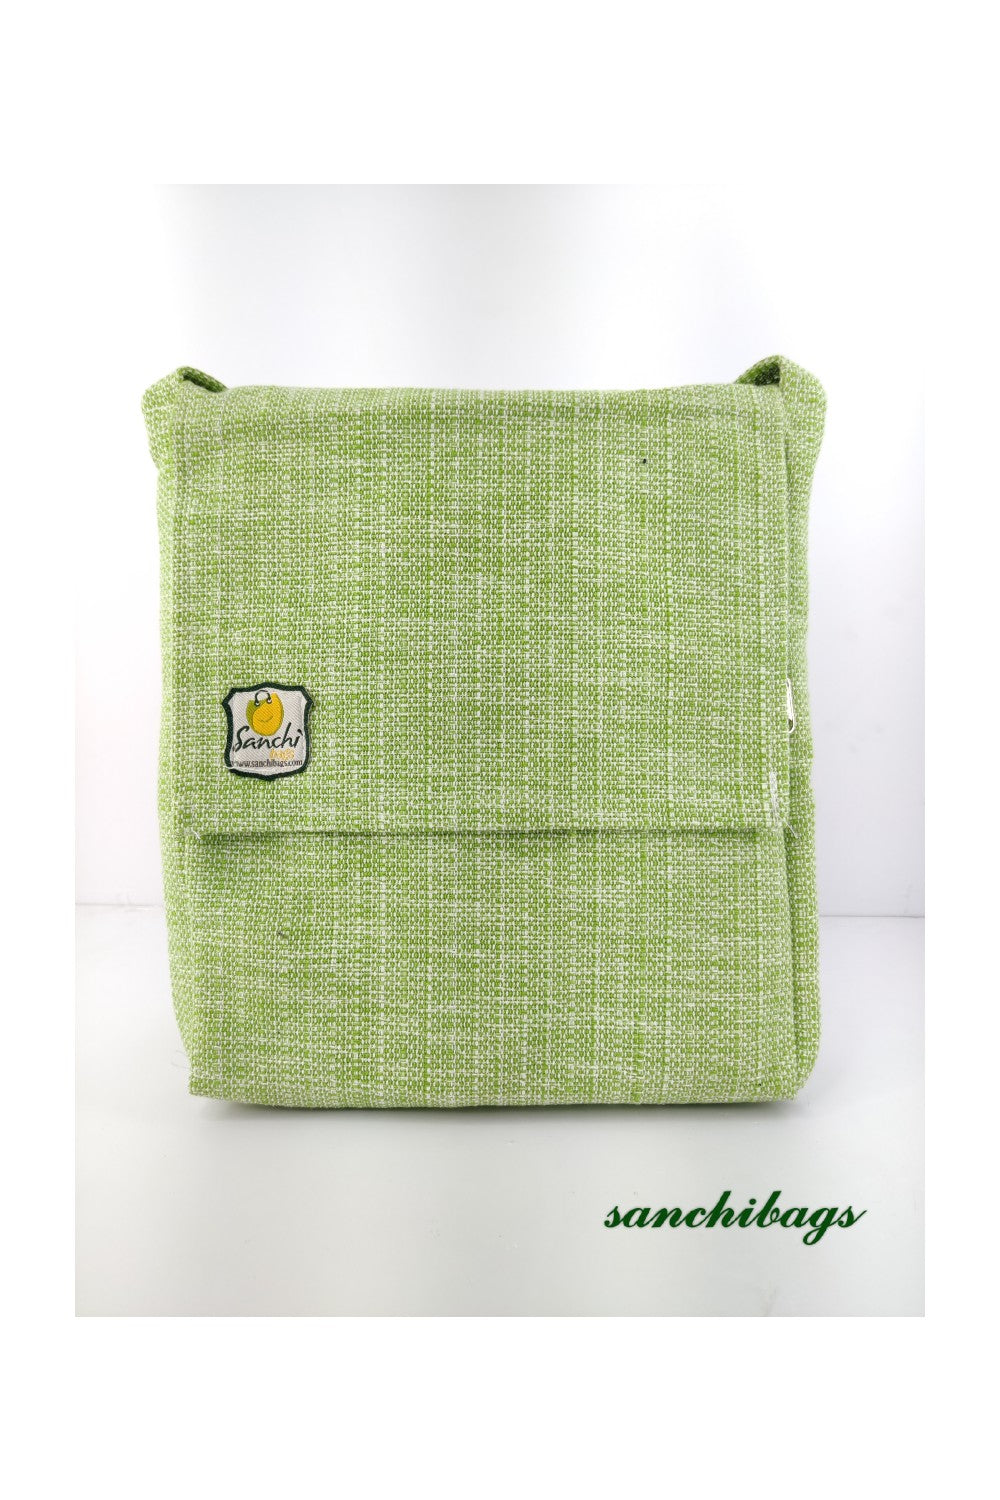 Sanchi Bag Medium